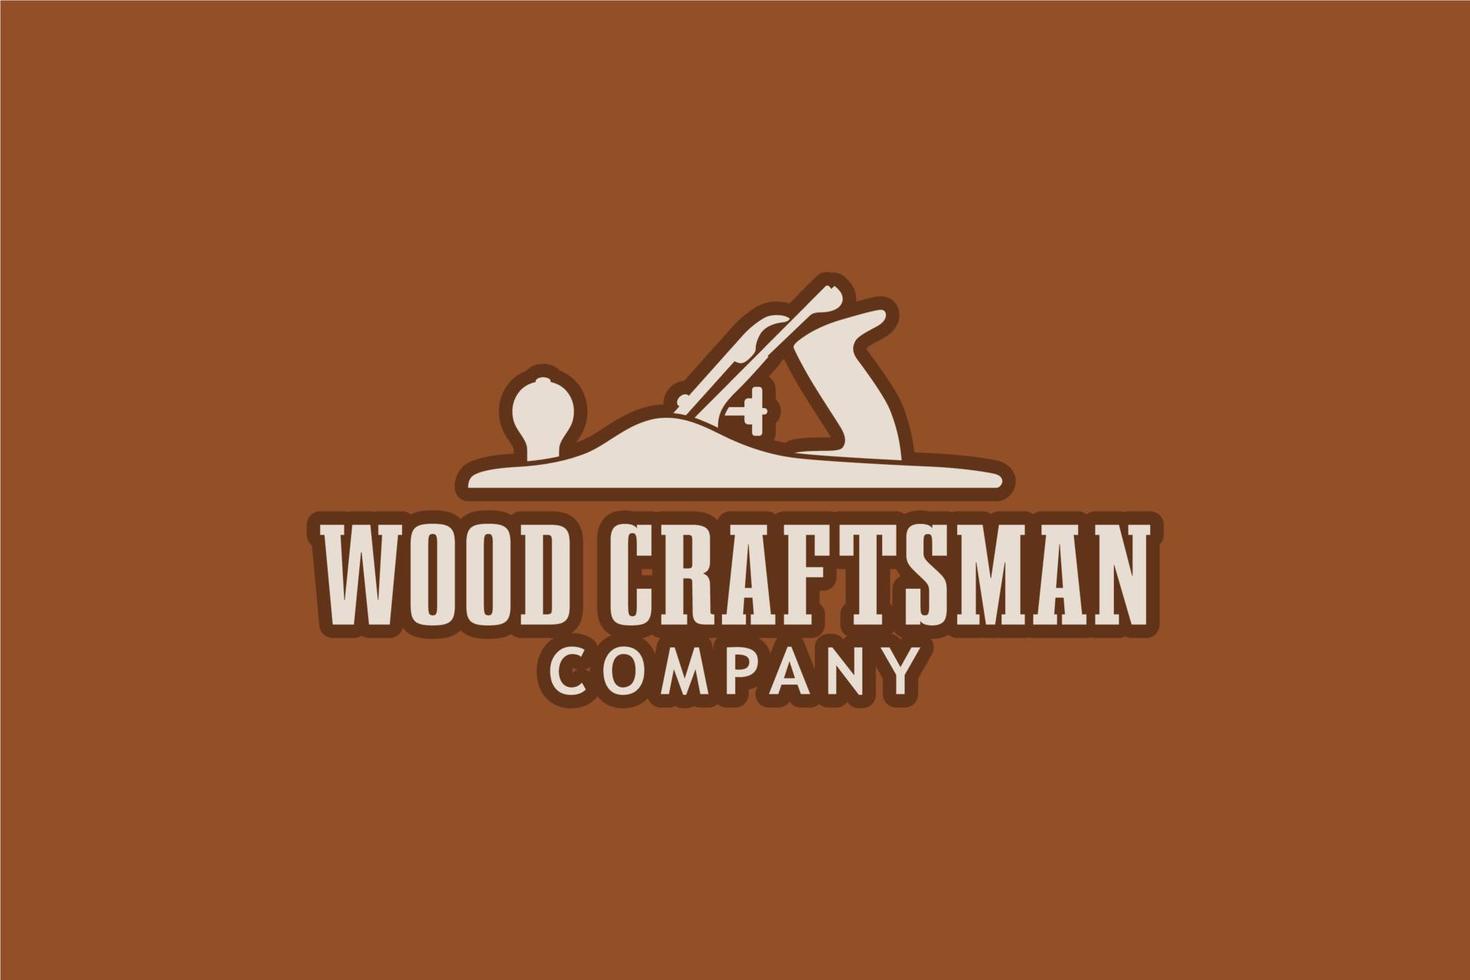 Vintage Woodworking Wood Fore Plane or Jack Plane Logo design vector